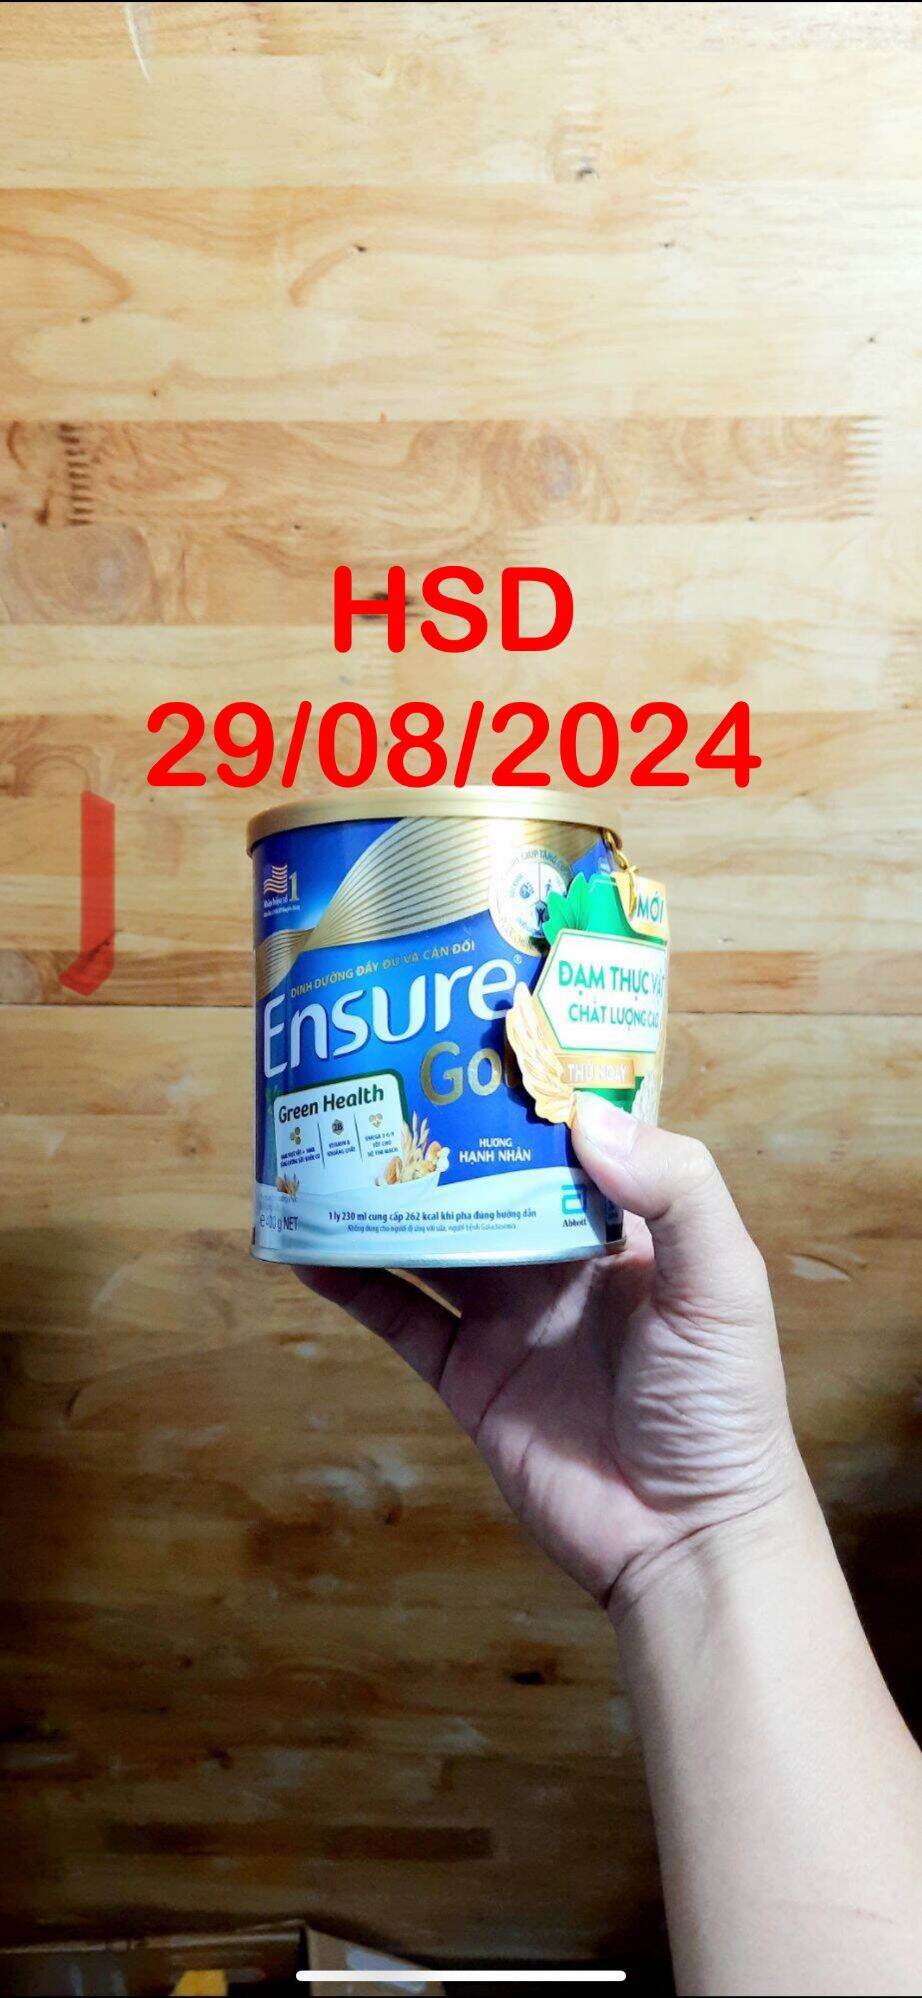 Sữa Ensure 400g Hương Hạnh Nhân Abbott Ensure gold HSD 29/08/2024